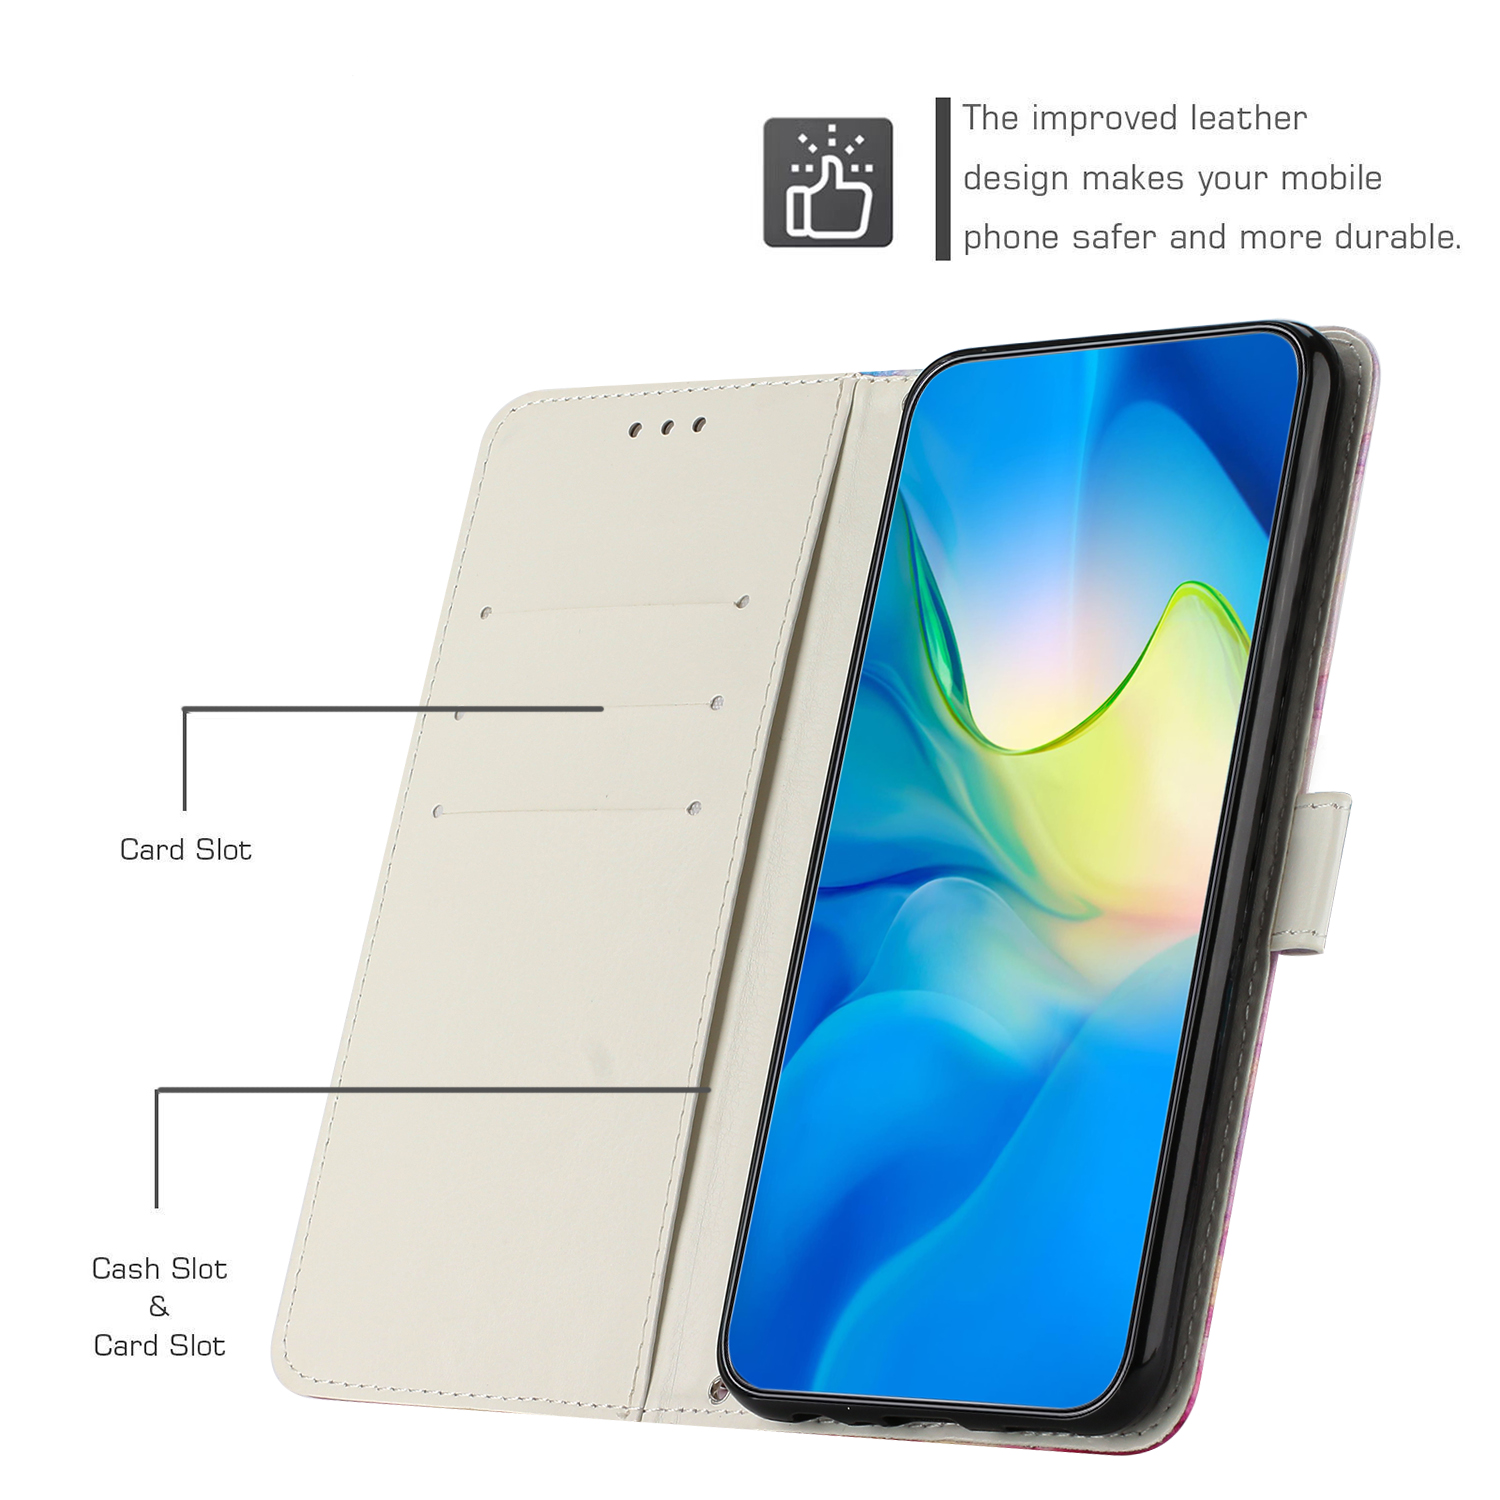 Funda Book con ranuras para tarjetas para Samsung Galaxy A23 5G